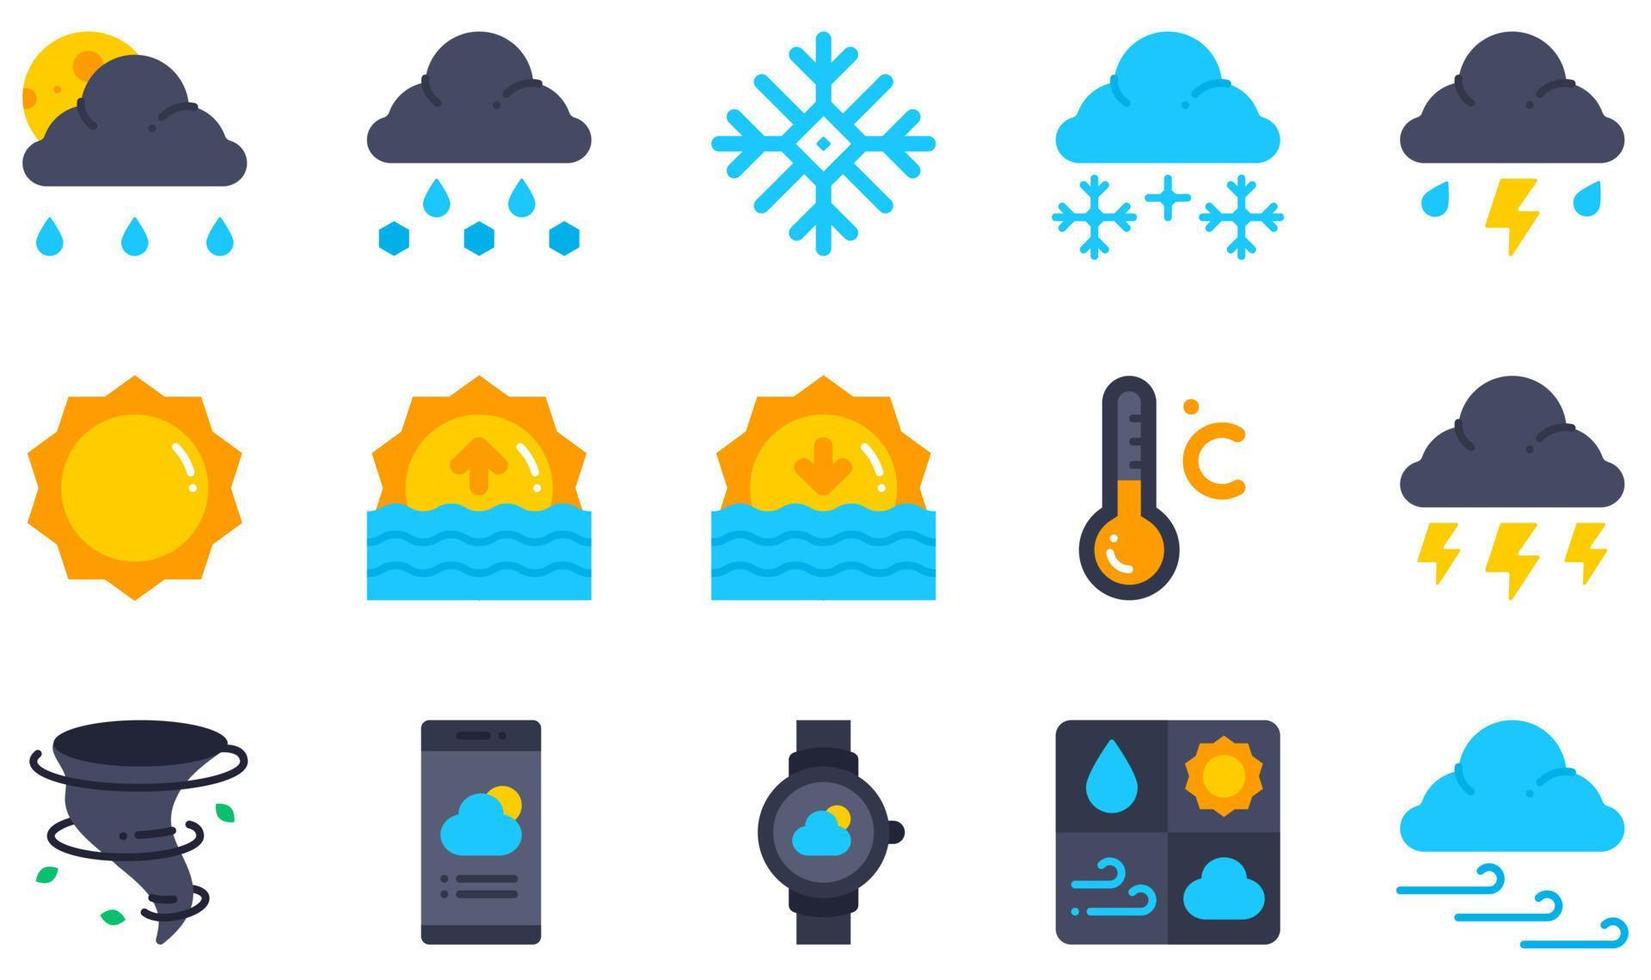 uppsättning vektor ikoner relaterade till väder. innehåller sådana ikoner som snöslask, snö, storm, soluppgång, solnedgång, åskväder och mer.